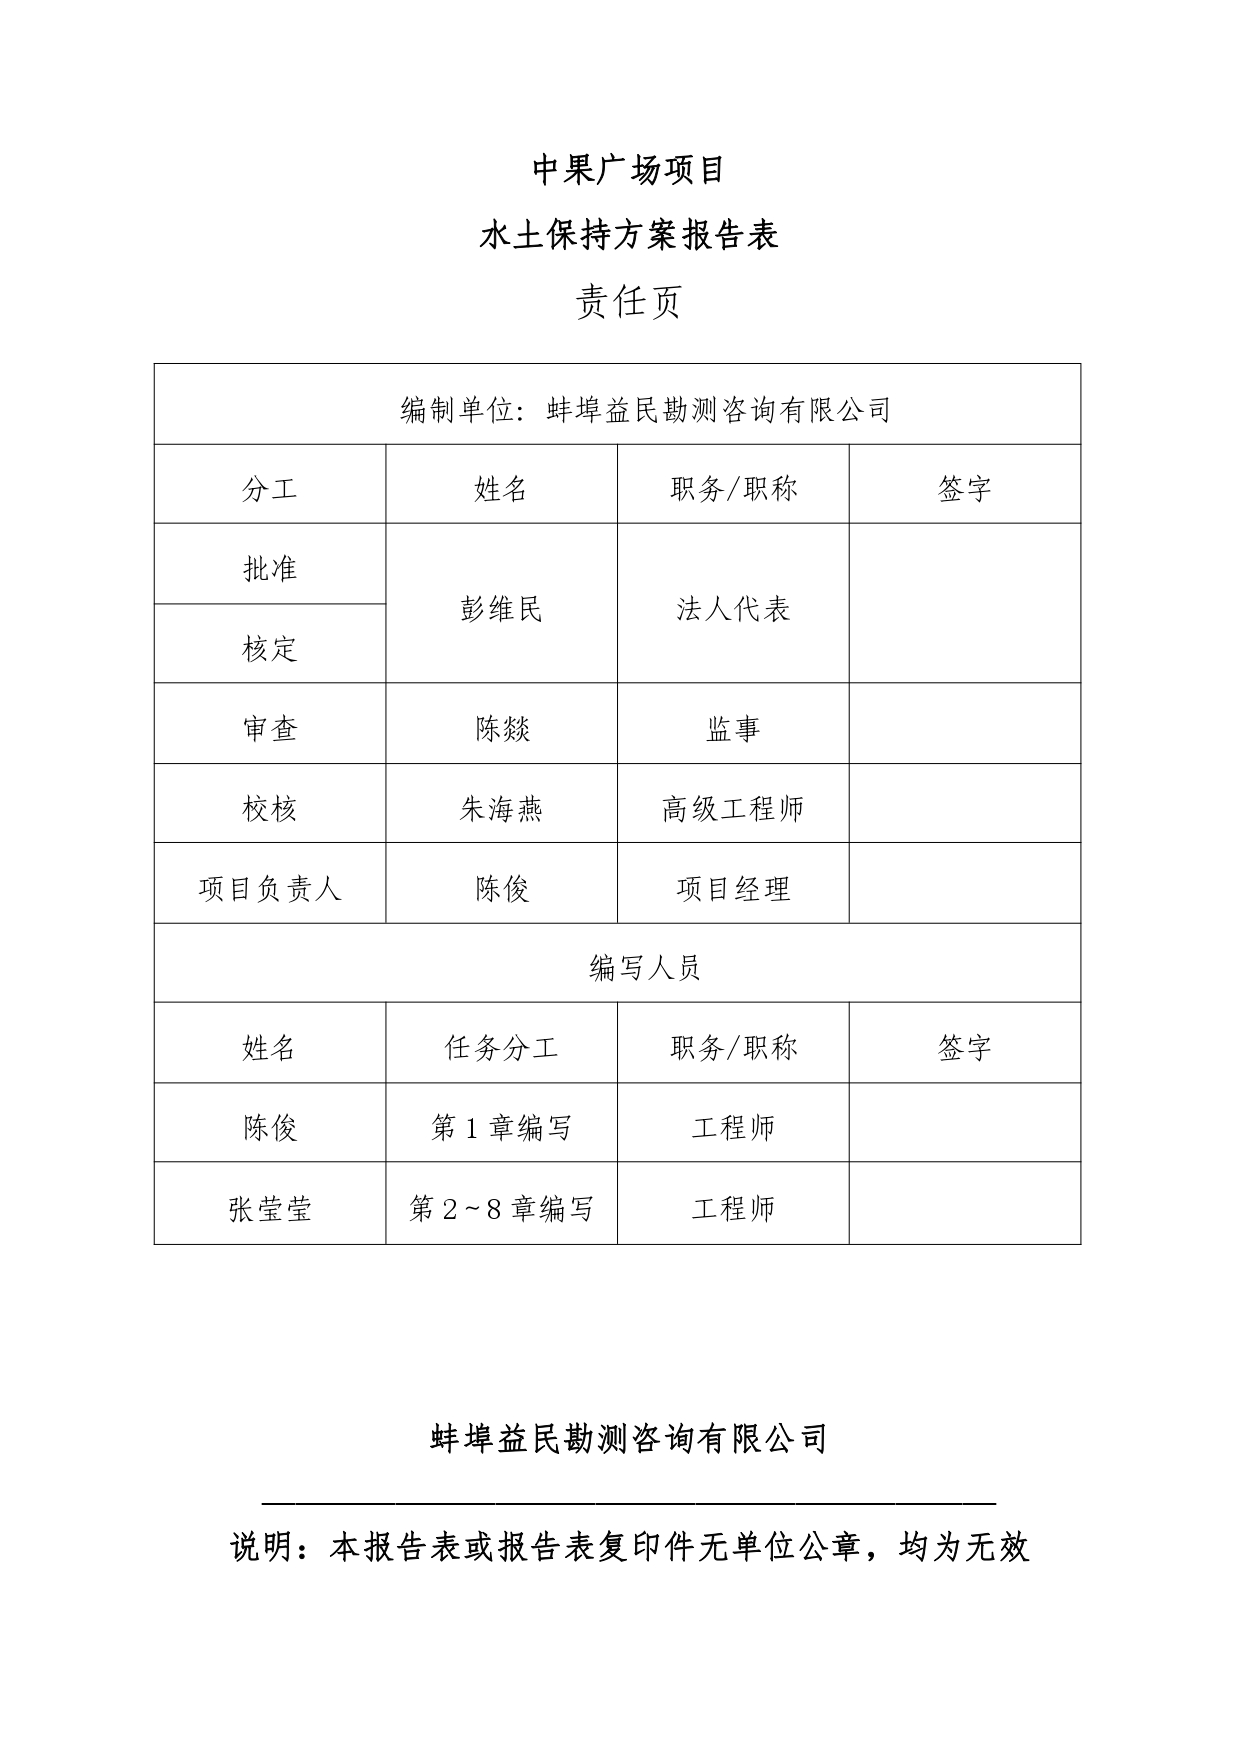 01-中果广场大厦项目水土保持报告表-打印_page-0002.jpg